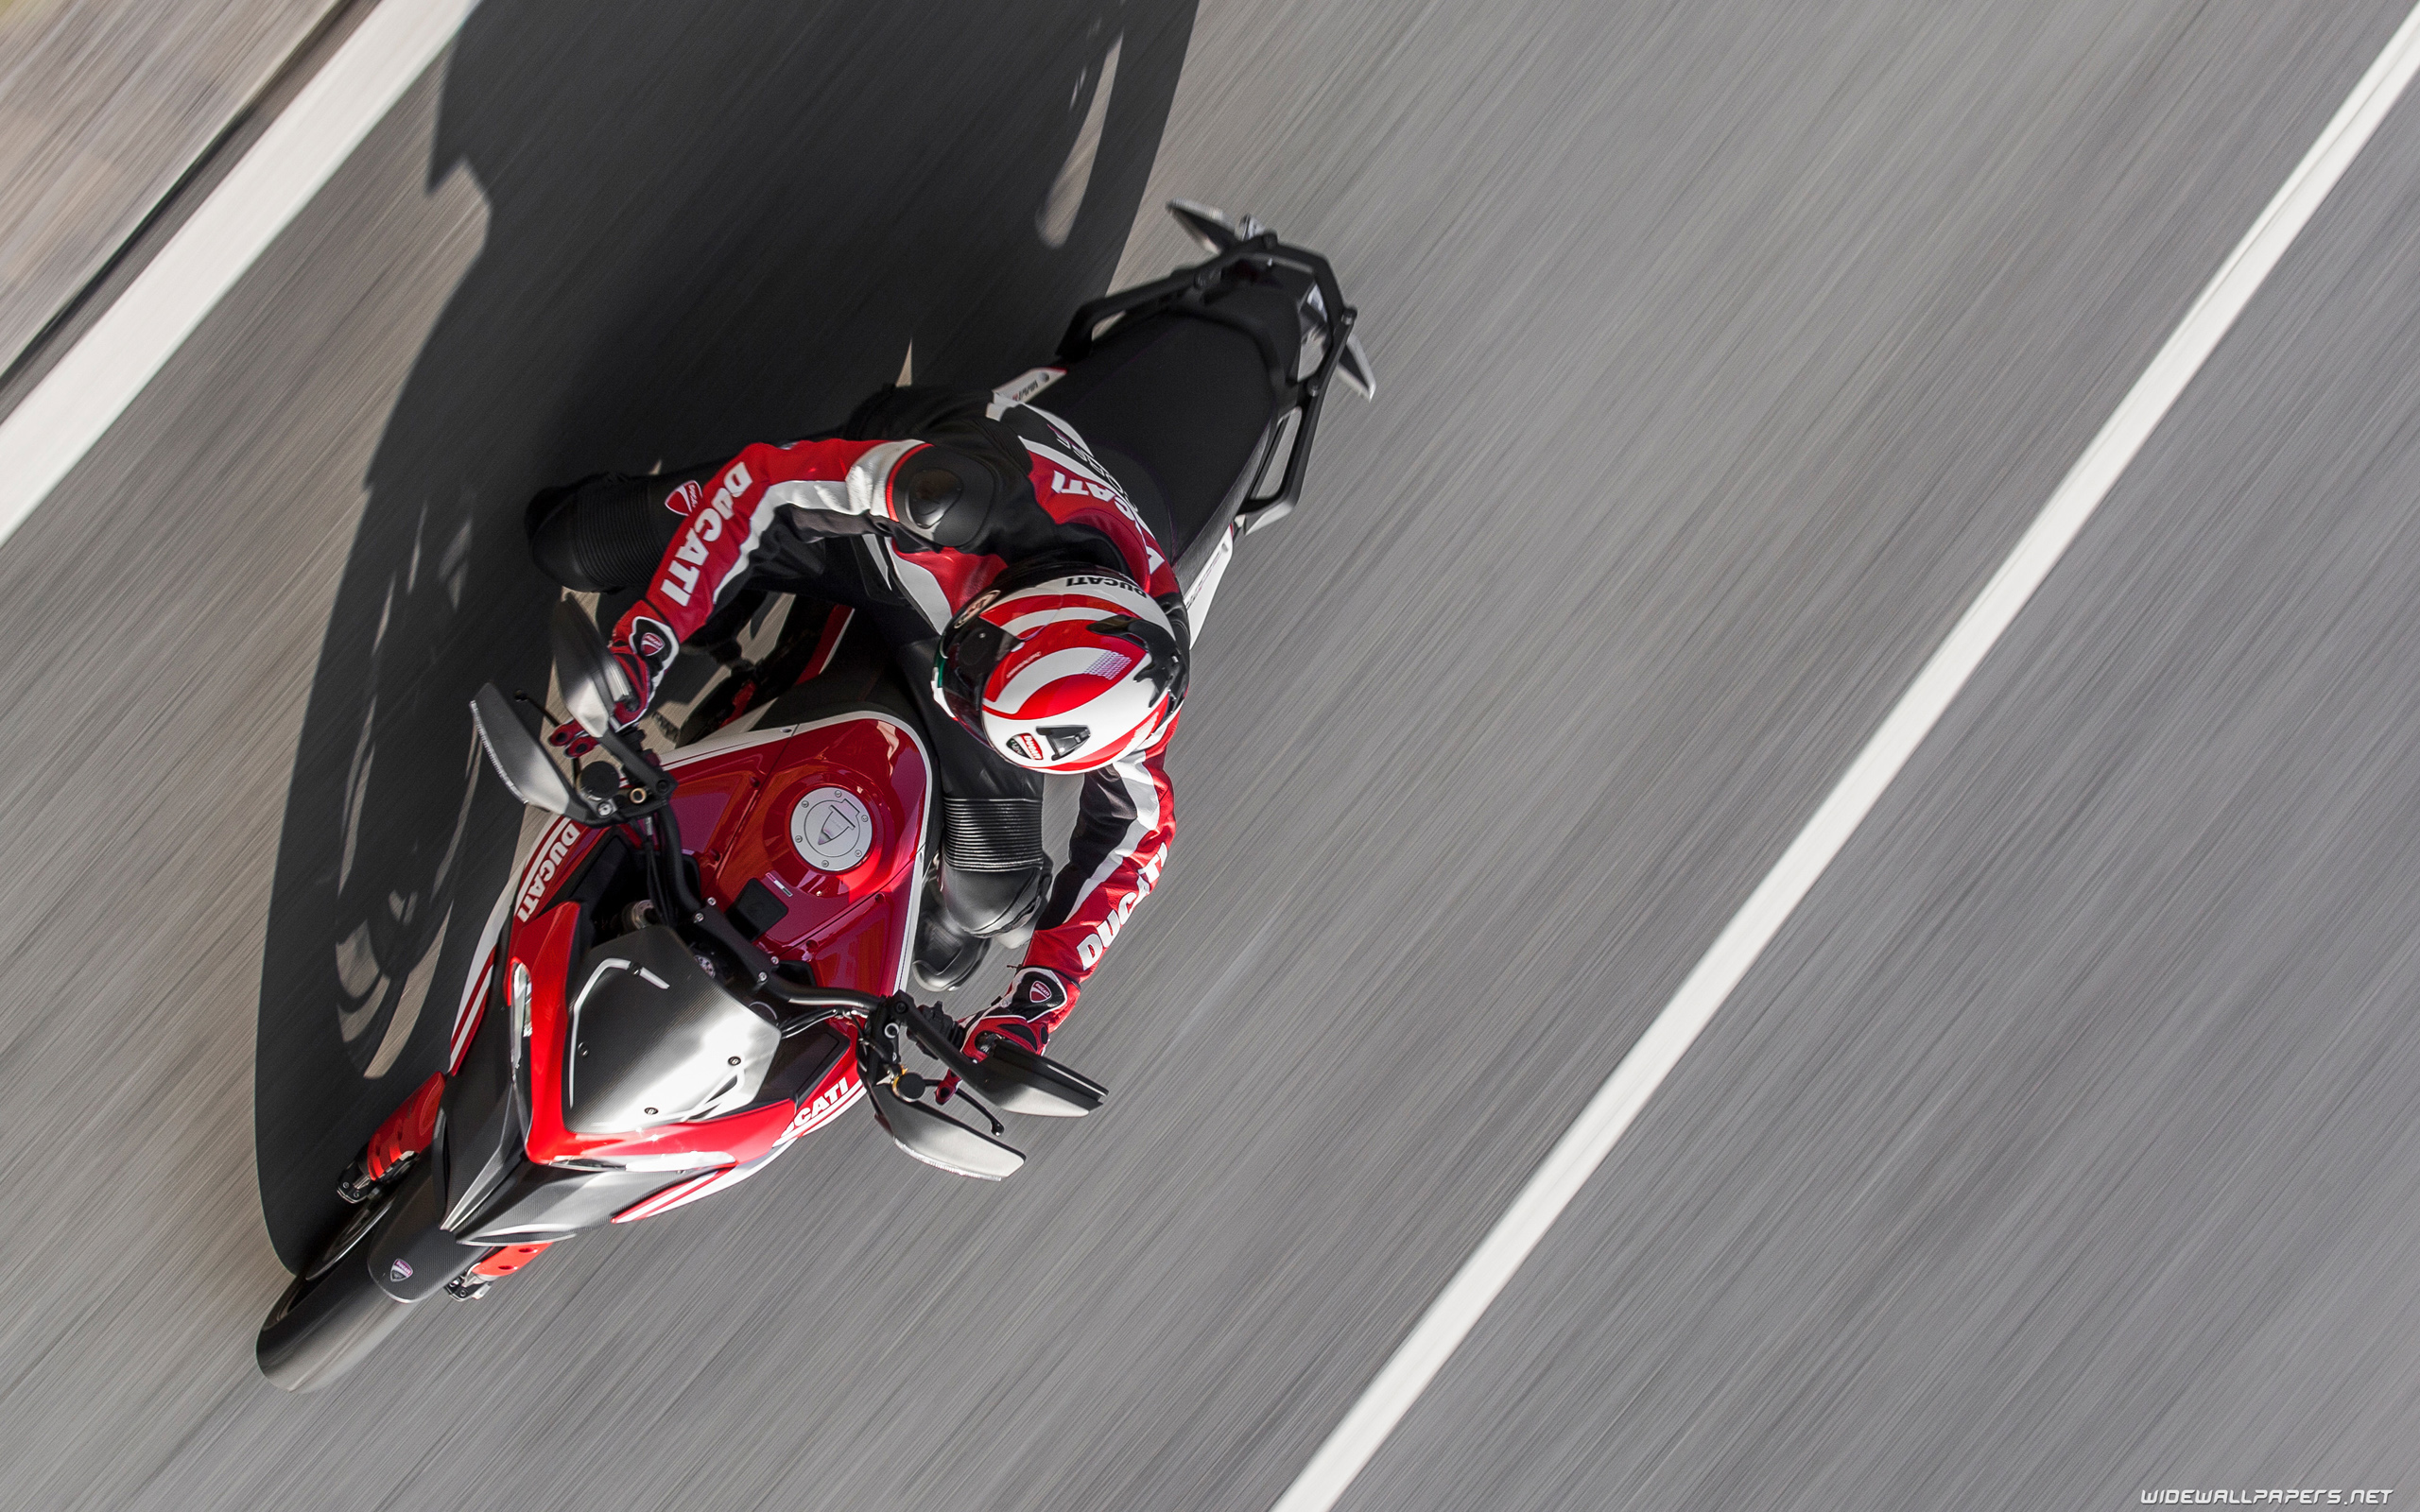 Ducati Multistrada 1200 Wallpapers